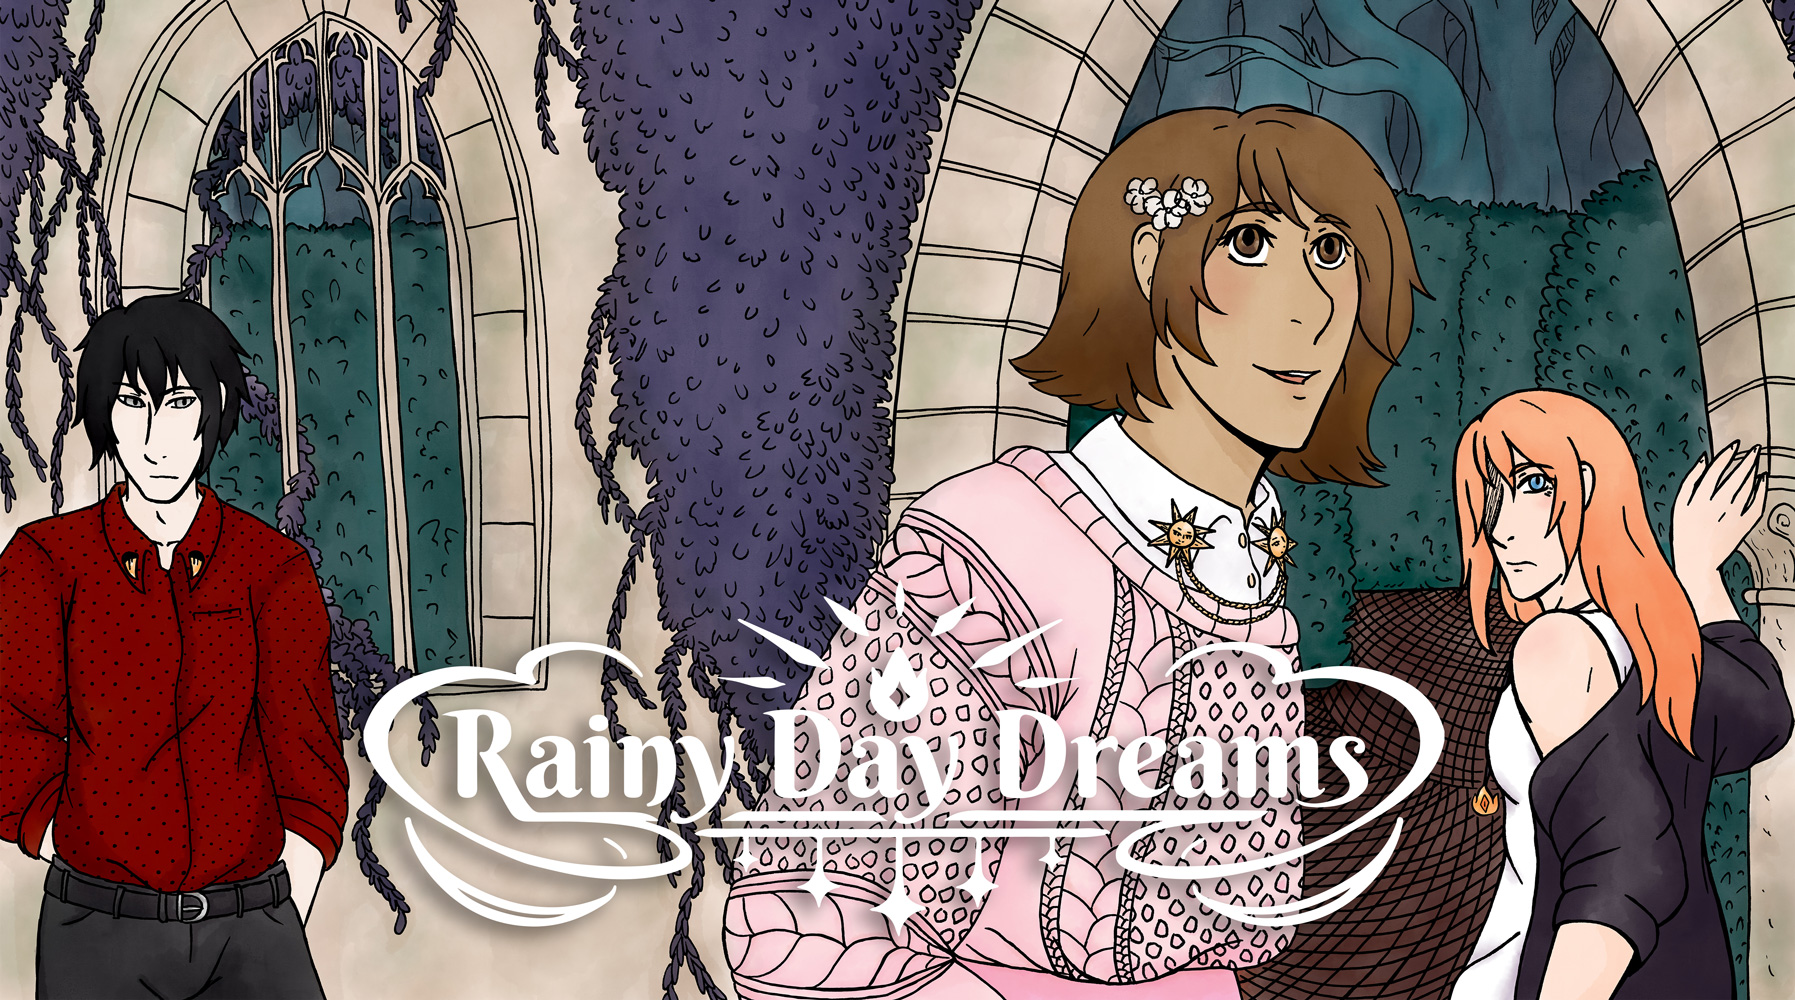 Rainy Day Dreams: Book 1